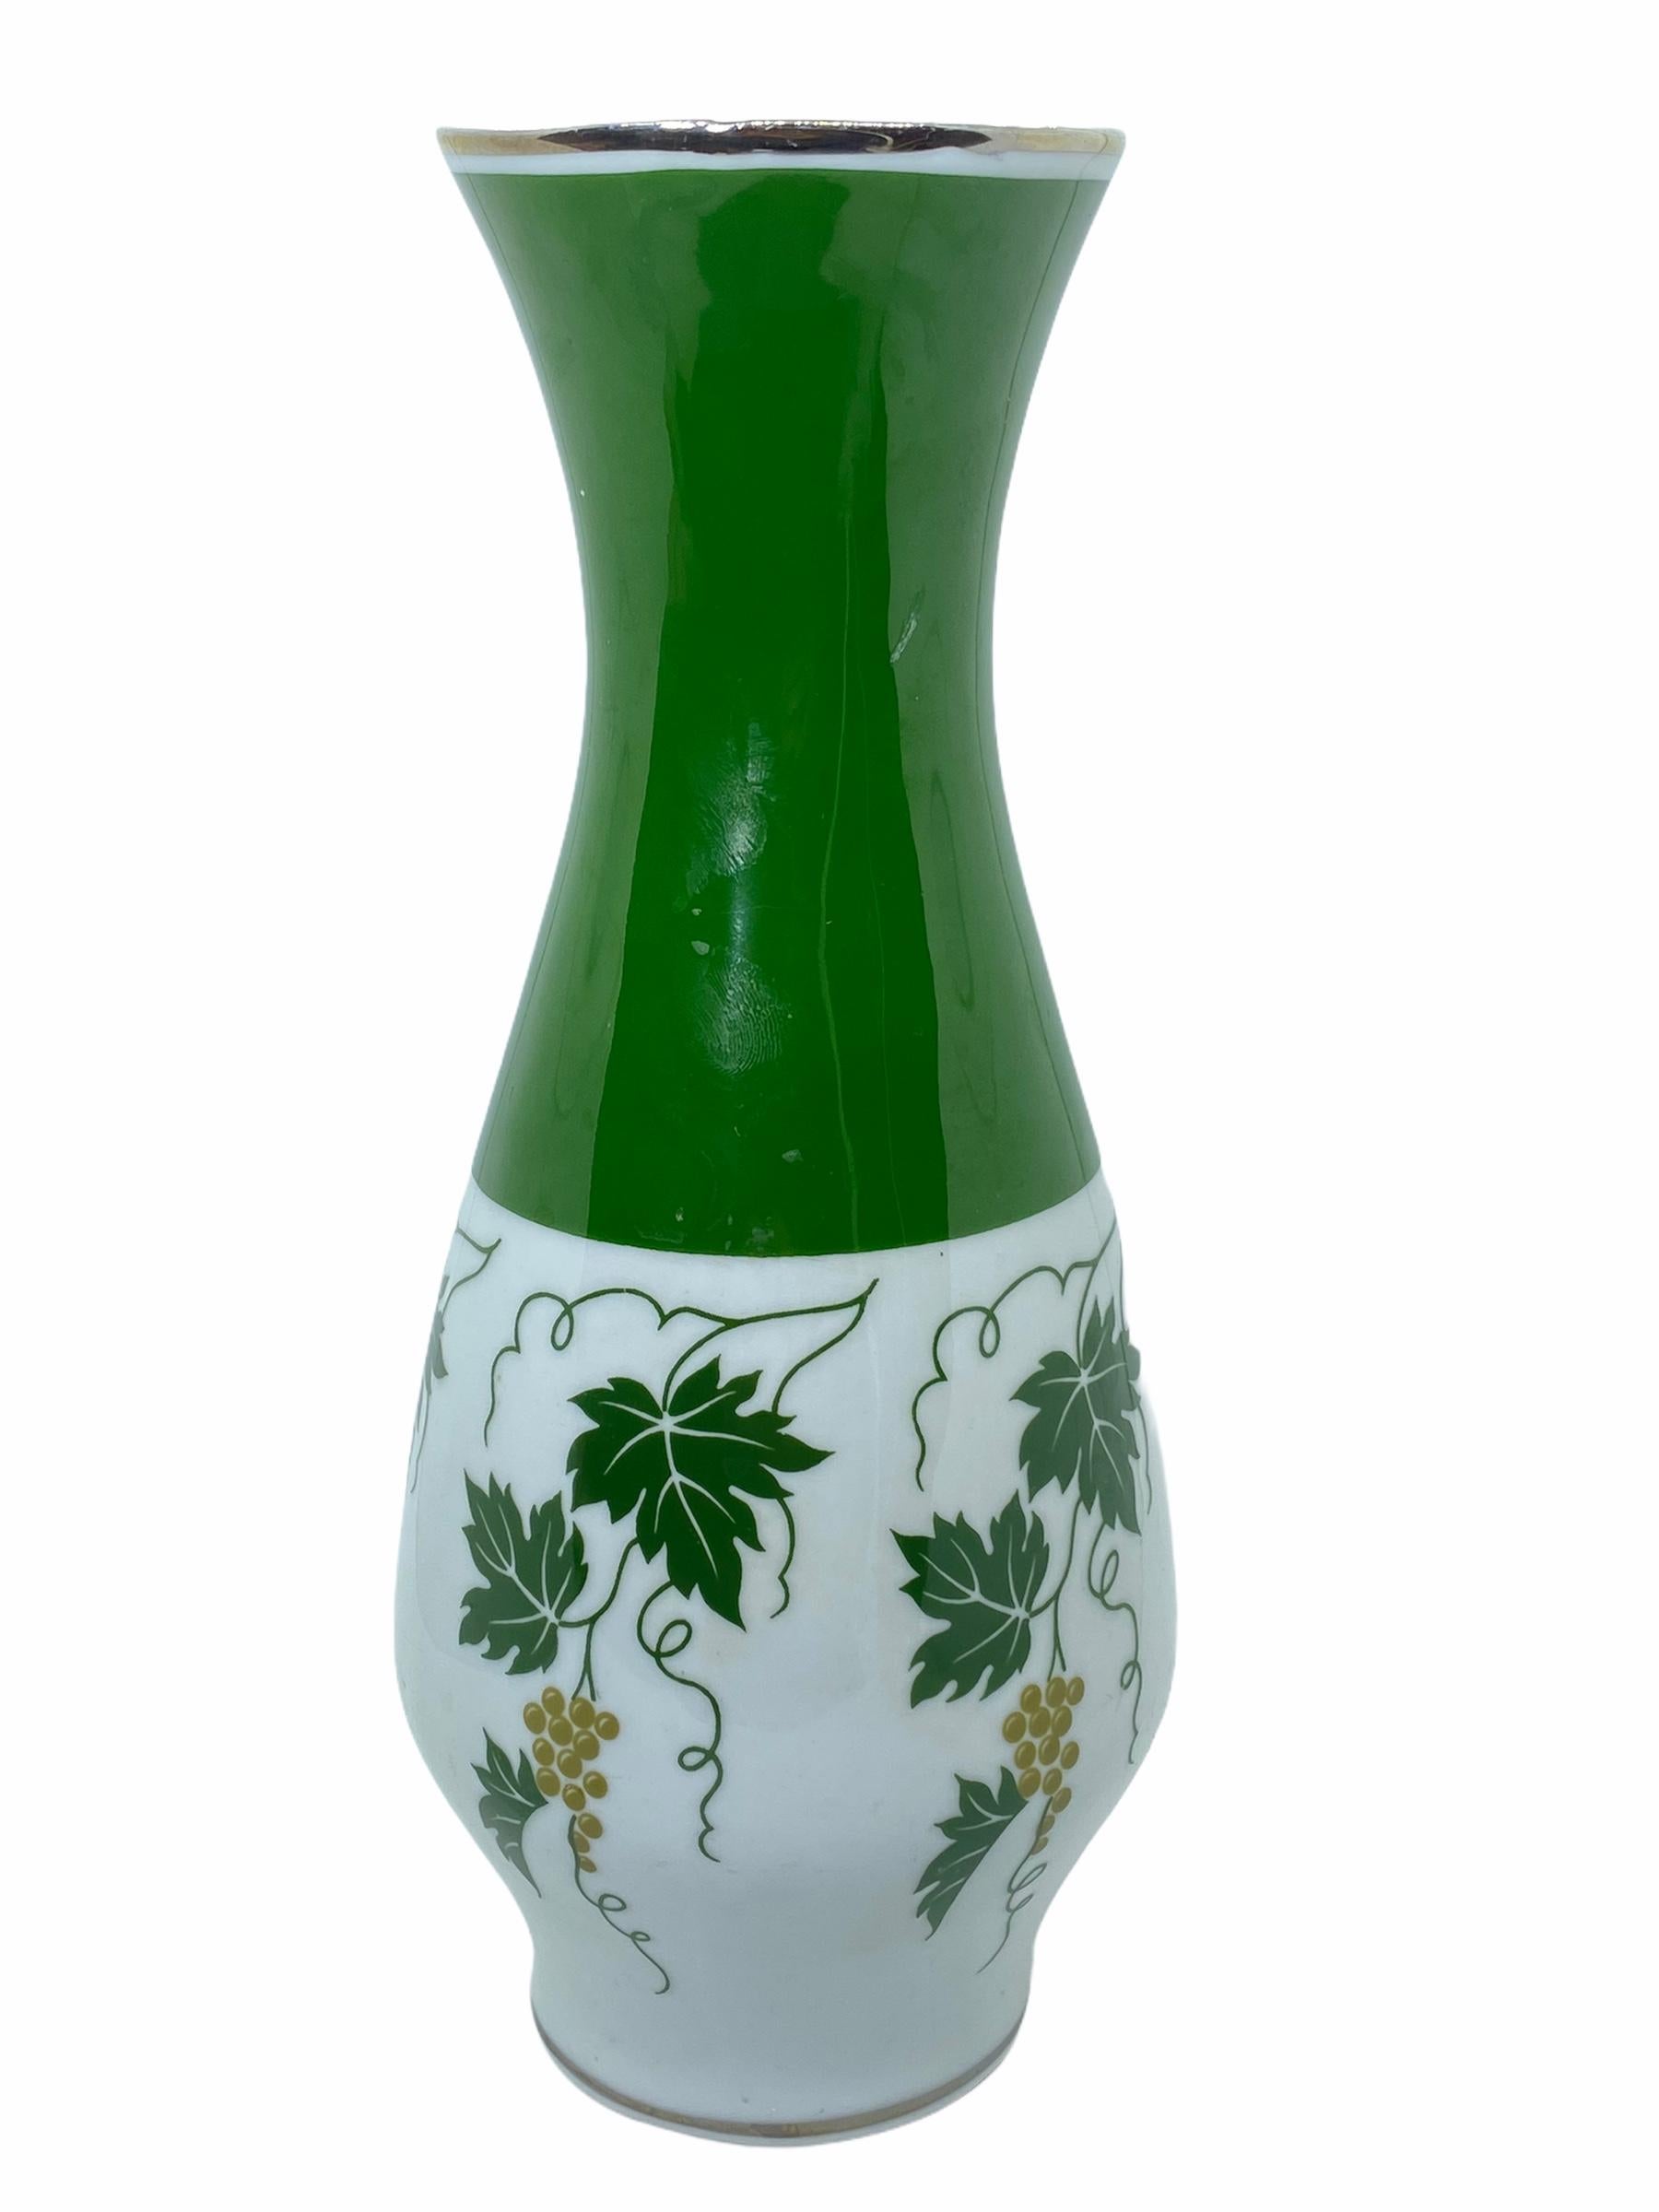 Eine erstaunliche Porzellan Porzellan Studio Kunst Keramik Vase in Deutschland gemacht, von Spechtsbrunn, ca. 1950er Jahre oder älter. Die Vase ist in einem sehr guten gebrauchten Zustand. Sie hat oben und unten einen silbernen Rand.